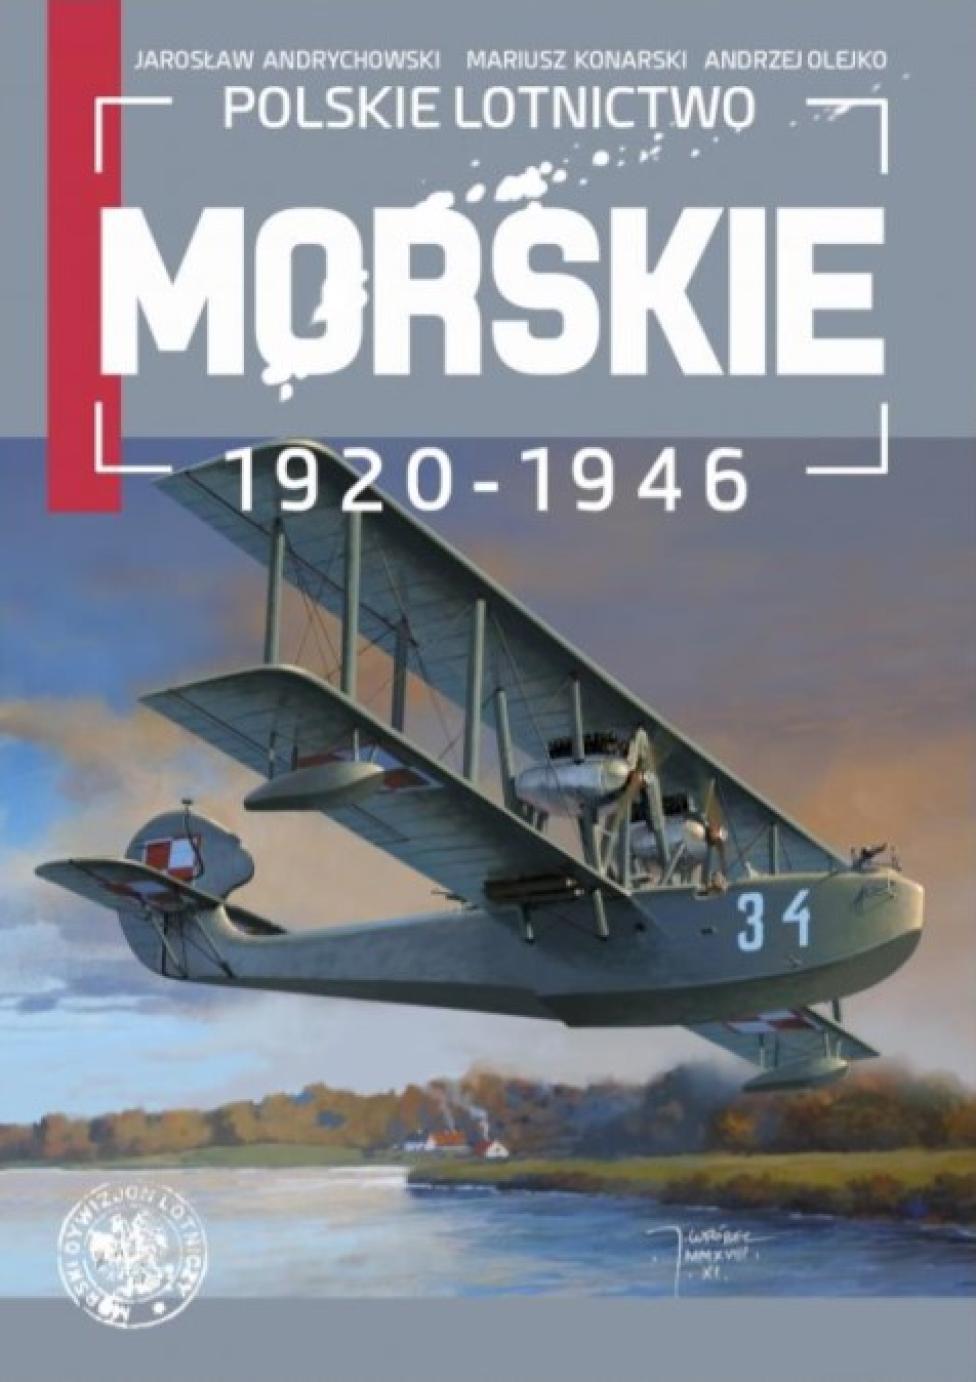 Książka "Polskie lotnictwo morskie 1920-1946" (fot. Dom Wydawniczy Księży Młyn)